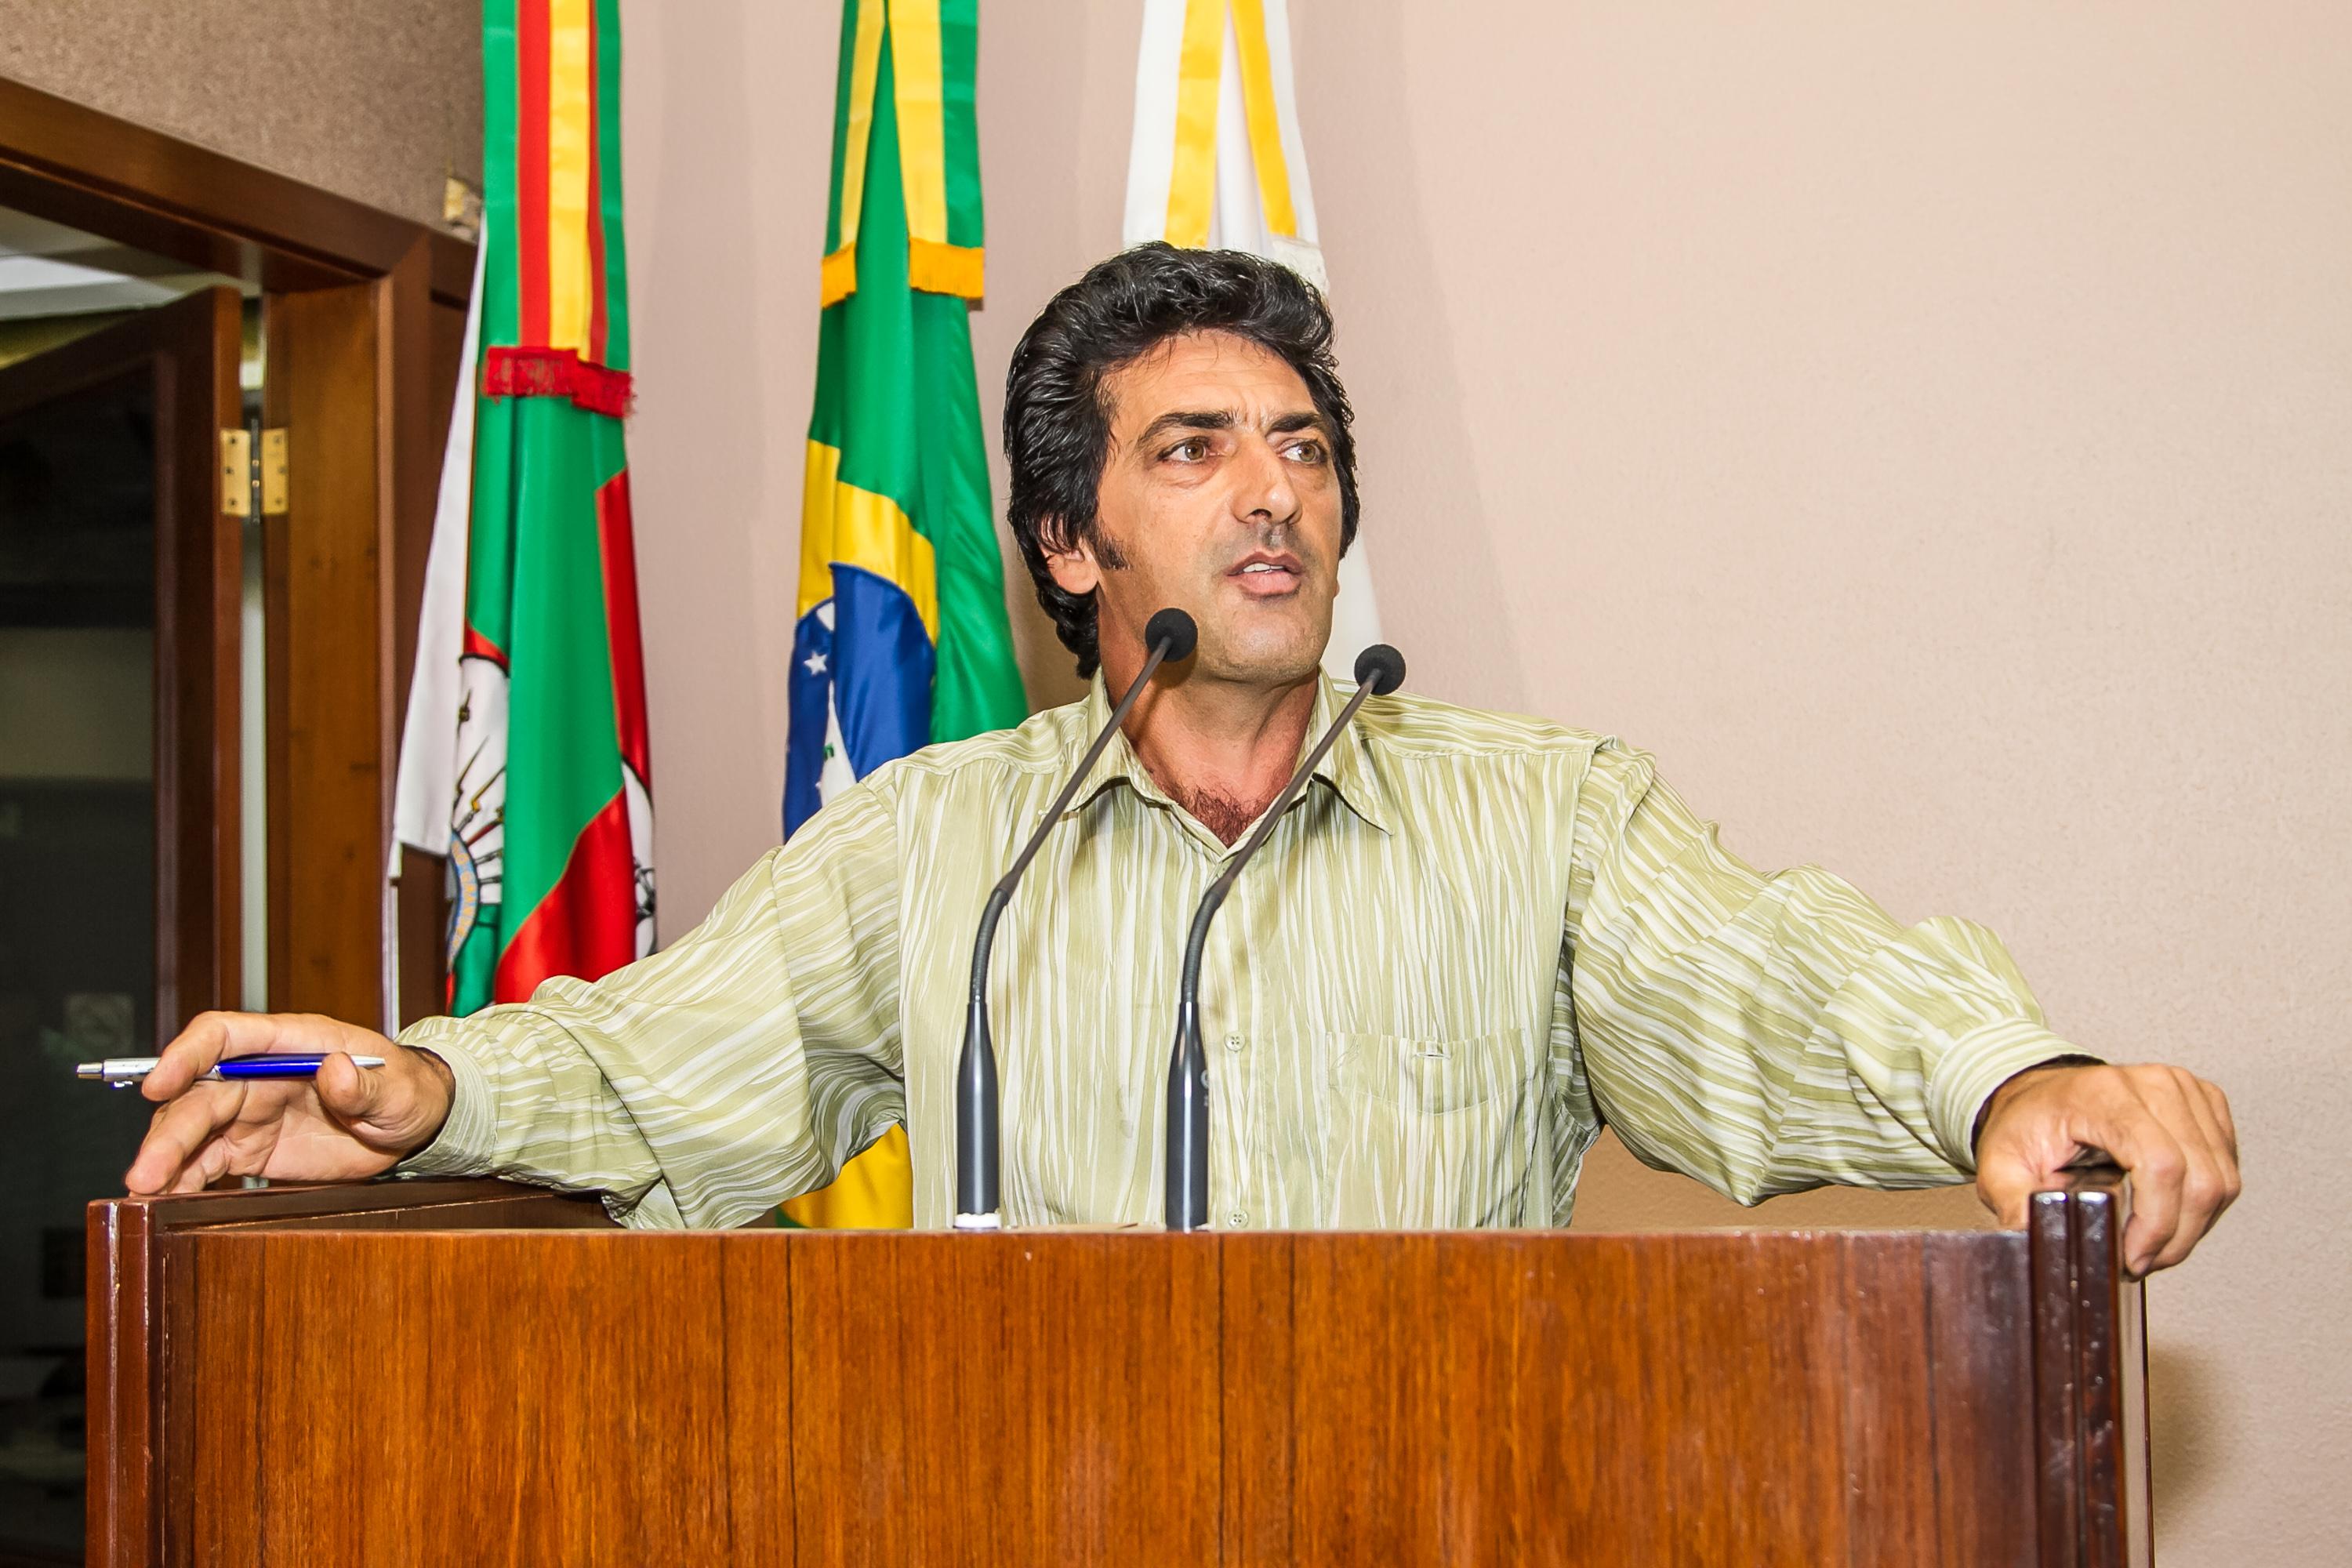 Arlindo Bandeira convida a comunidade para debater sobre a possibilidade de implantar um autódromo em Caxias